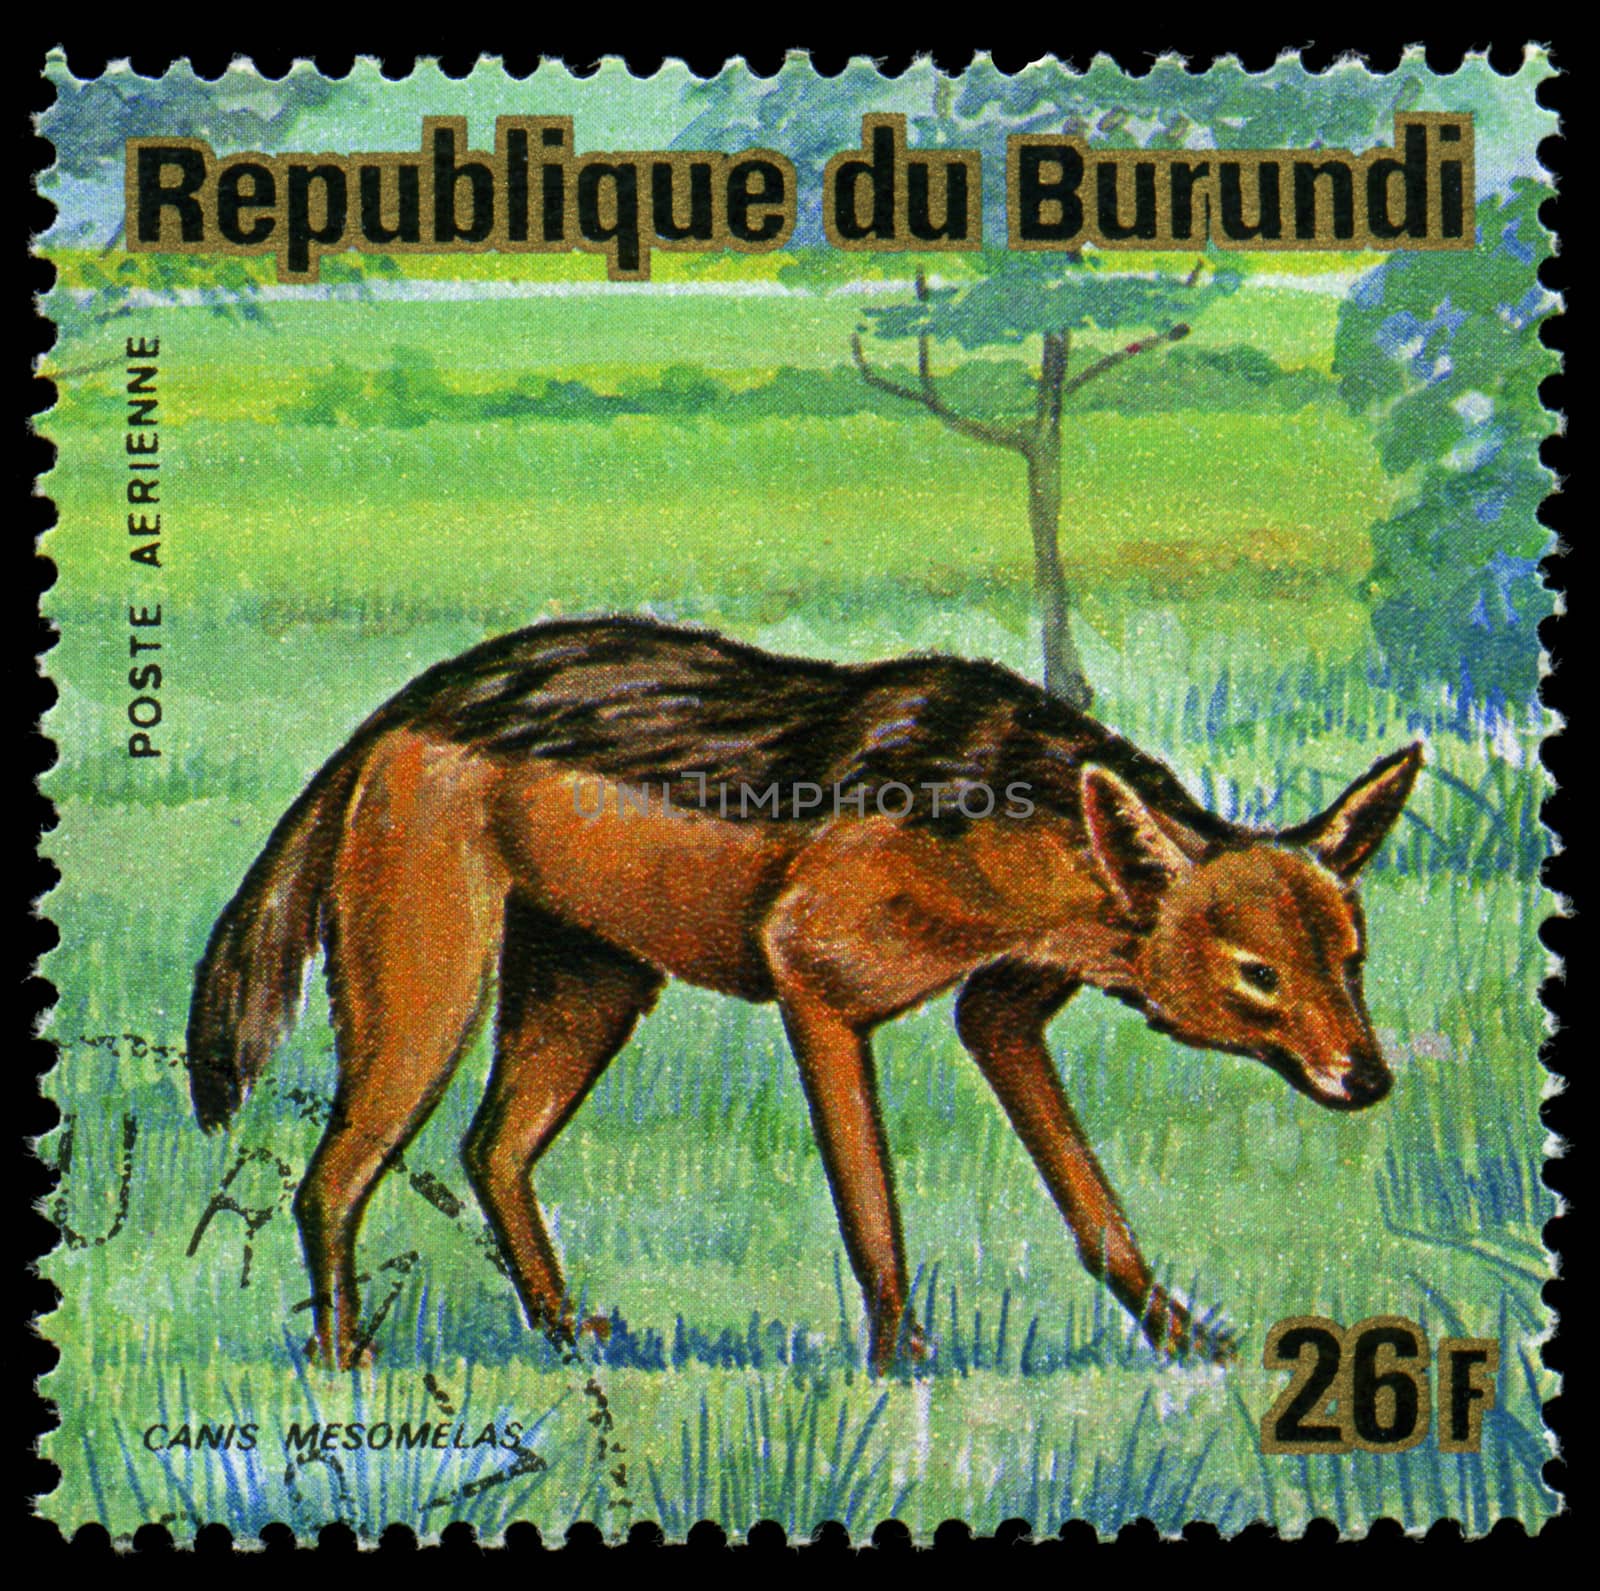 BURUNDI - CIRCA 1964: A stamp printed in Burundi shows a wild animal, circa 1964.